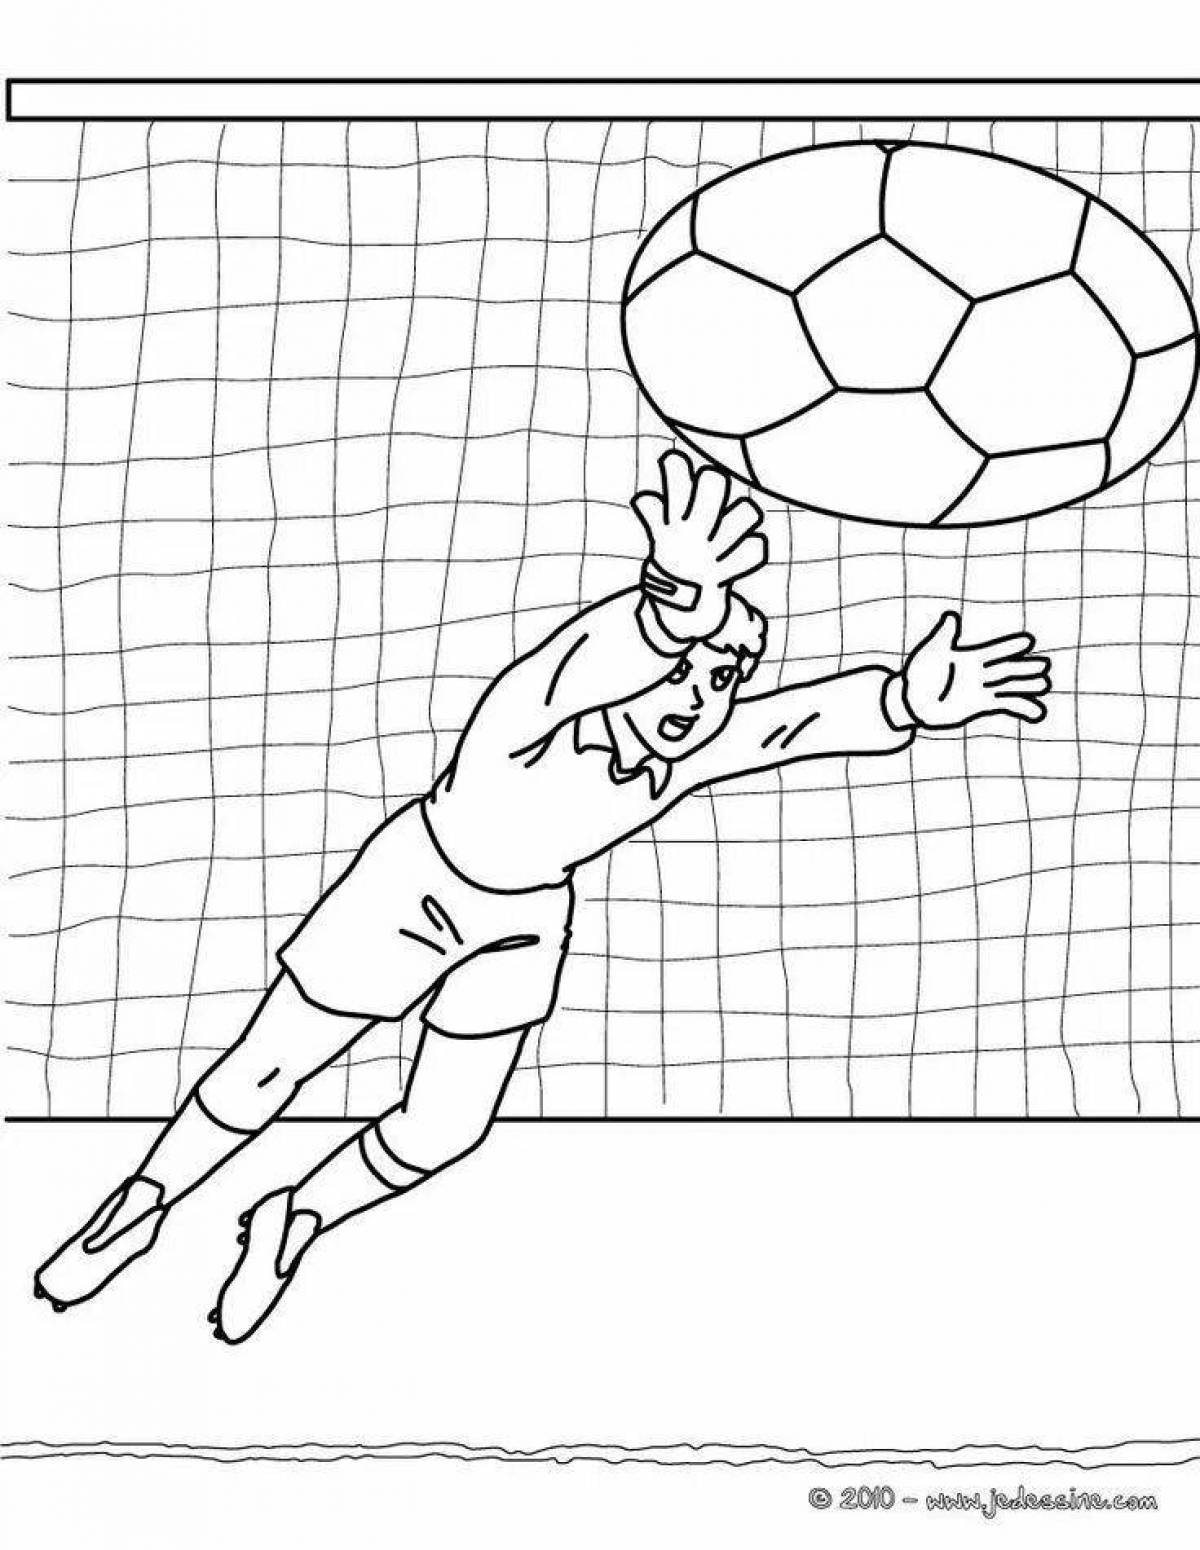 Анимированная страница раскраски футбольного вратаря